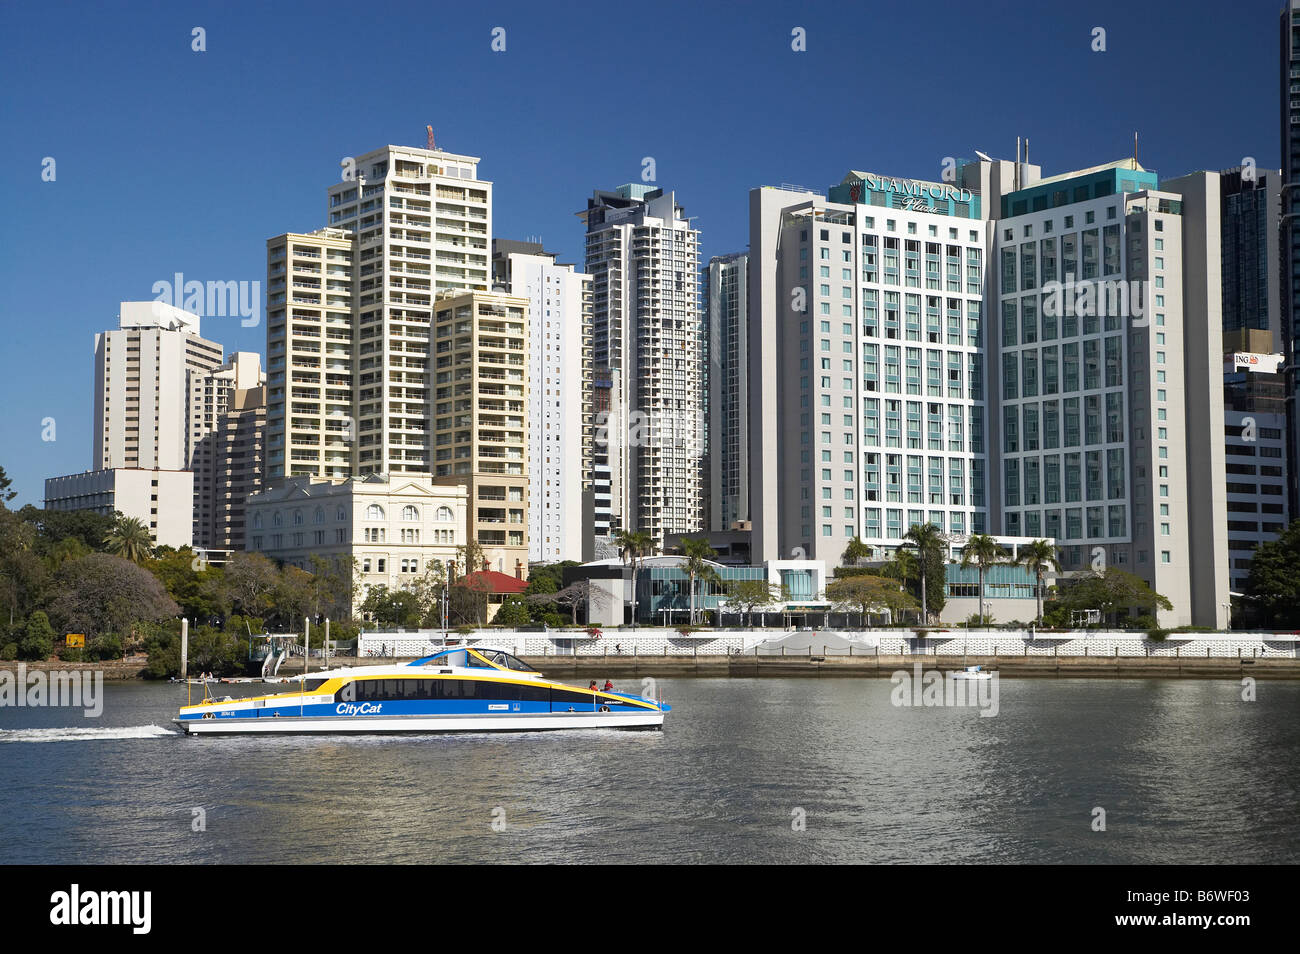 Stamford Plaza Hotel e grattacieli e city cat per i passeggeri dei traghetti nel porto di Fiume Brisbane Brisbane Queensland Australia Foto Stock